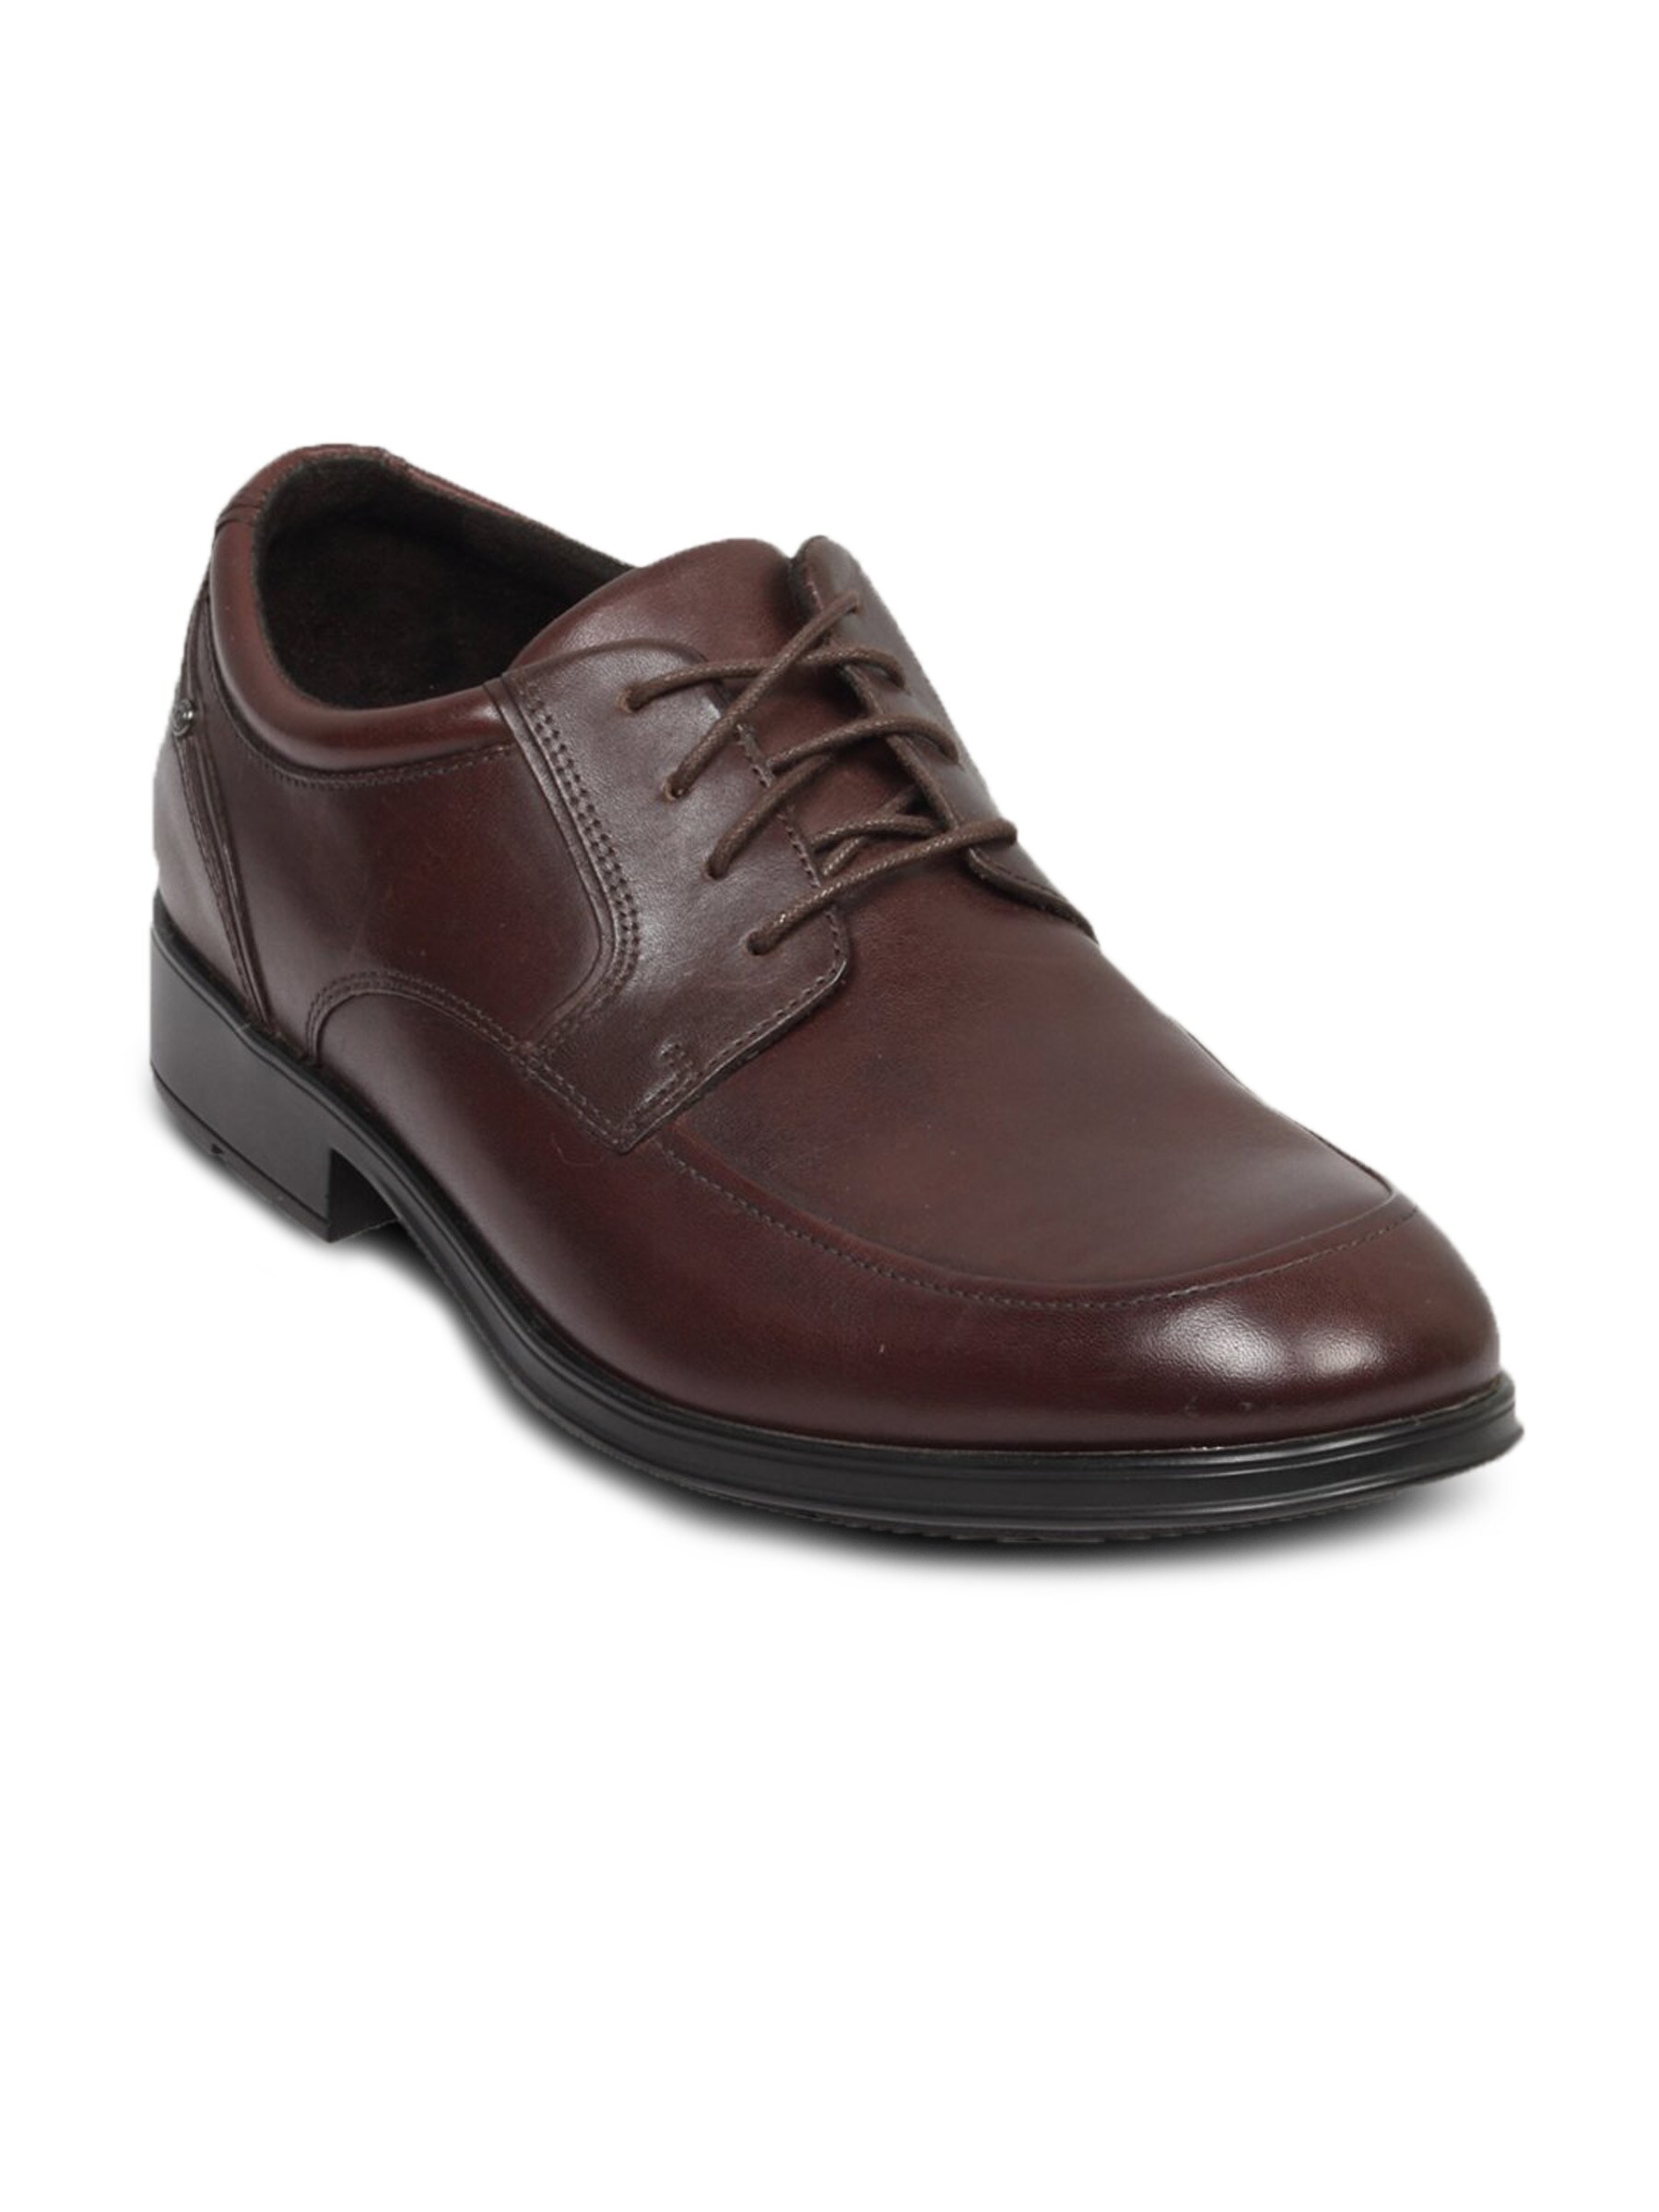 Rockport Men's Schemerhorn Dark Brown Shoe